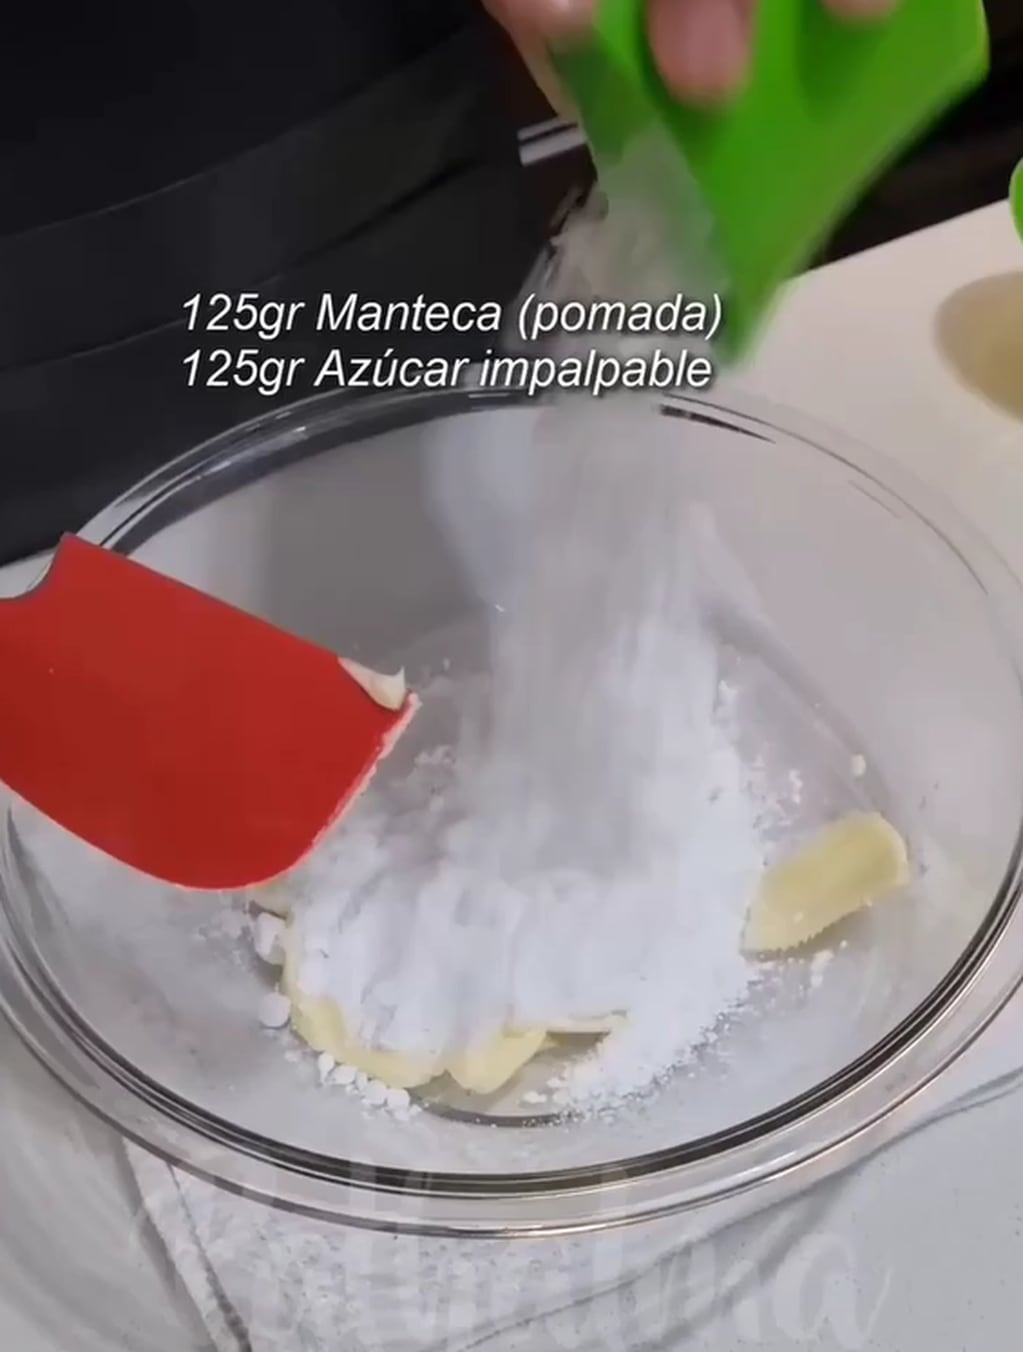 Receta rápida y fácil: cómo preparar los espectaculares conitos de dulce de leche bañados en chocolate